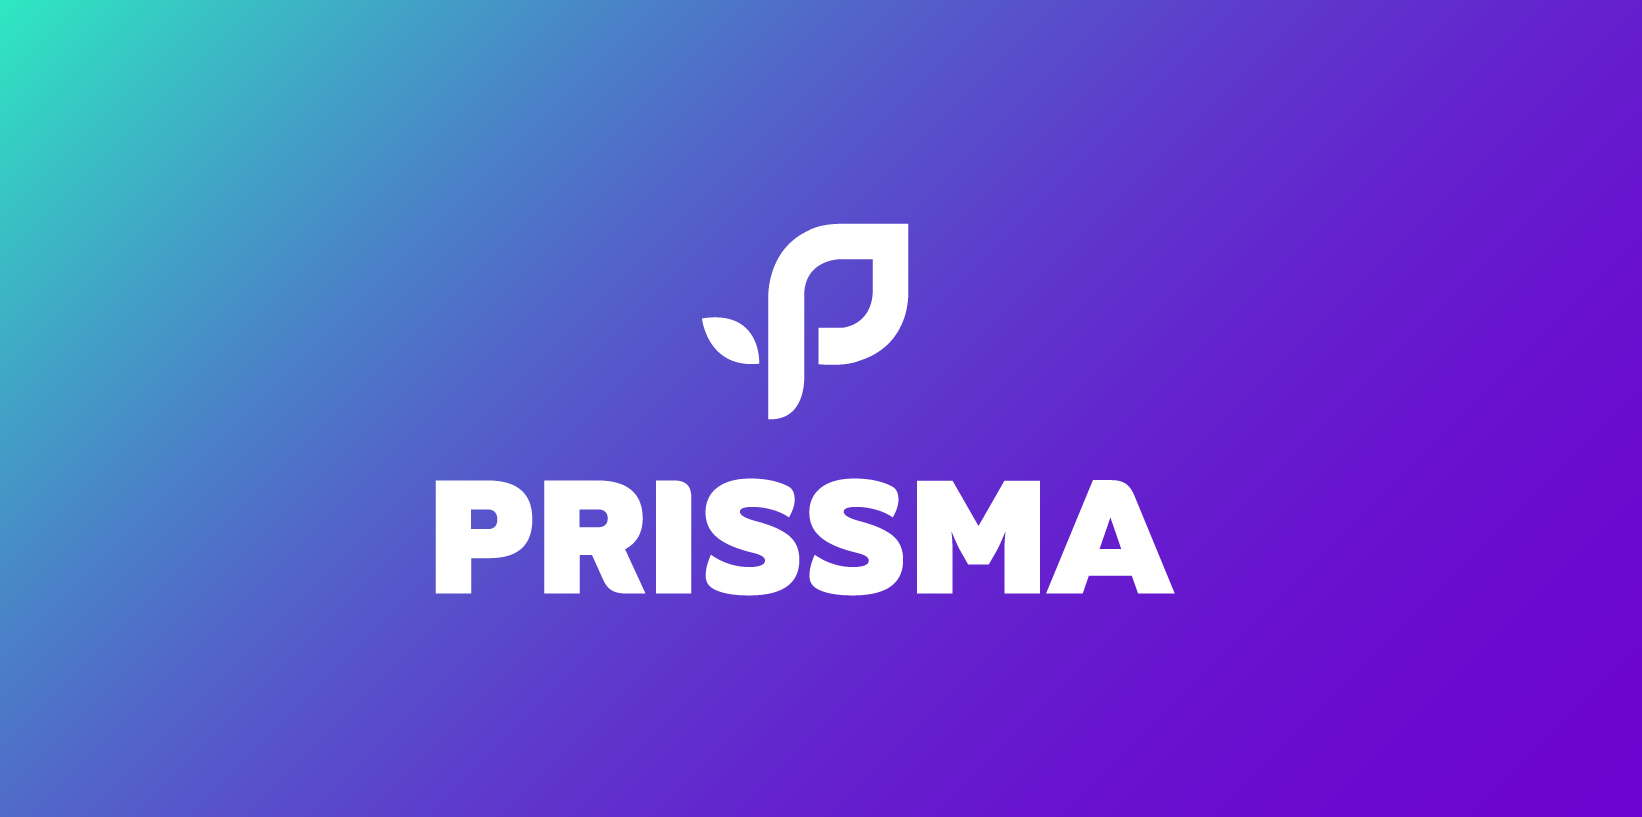 prissma-sistema-grafico-1